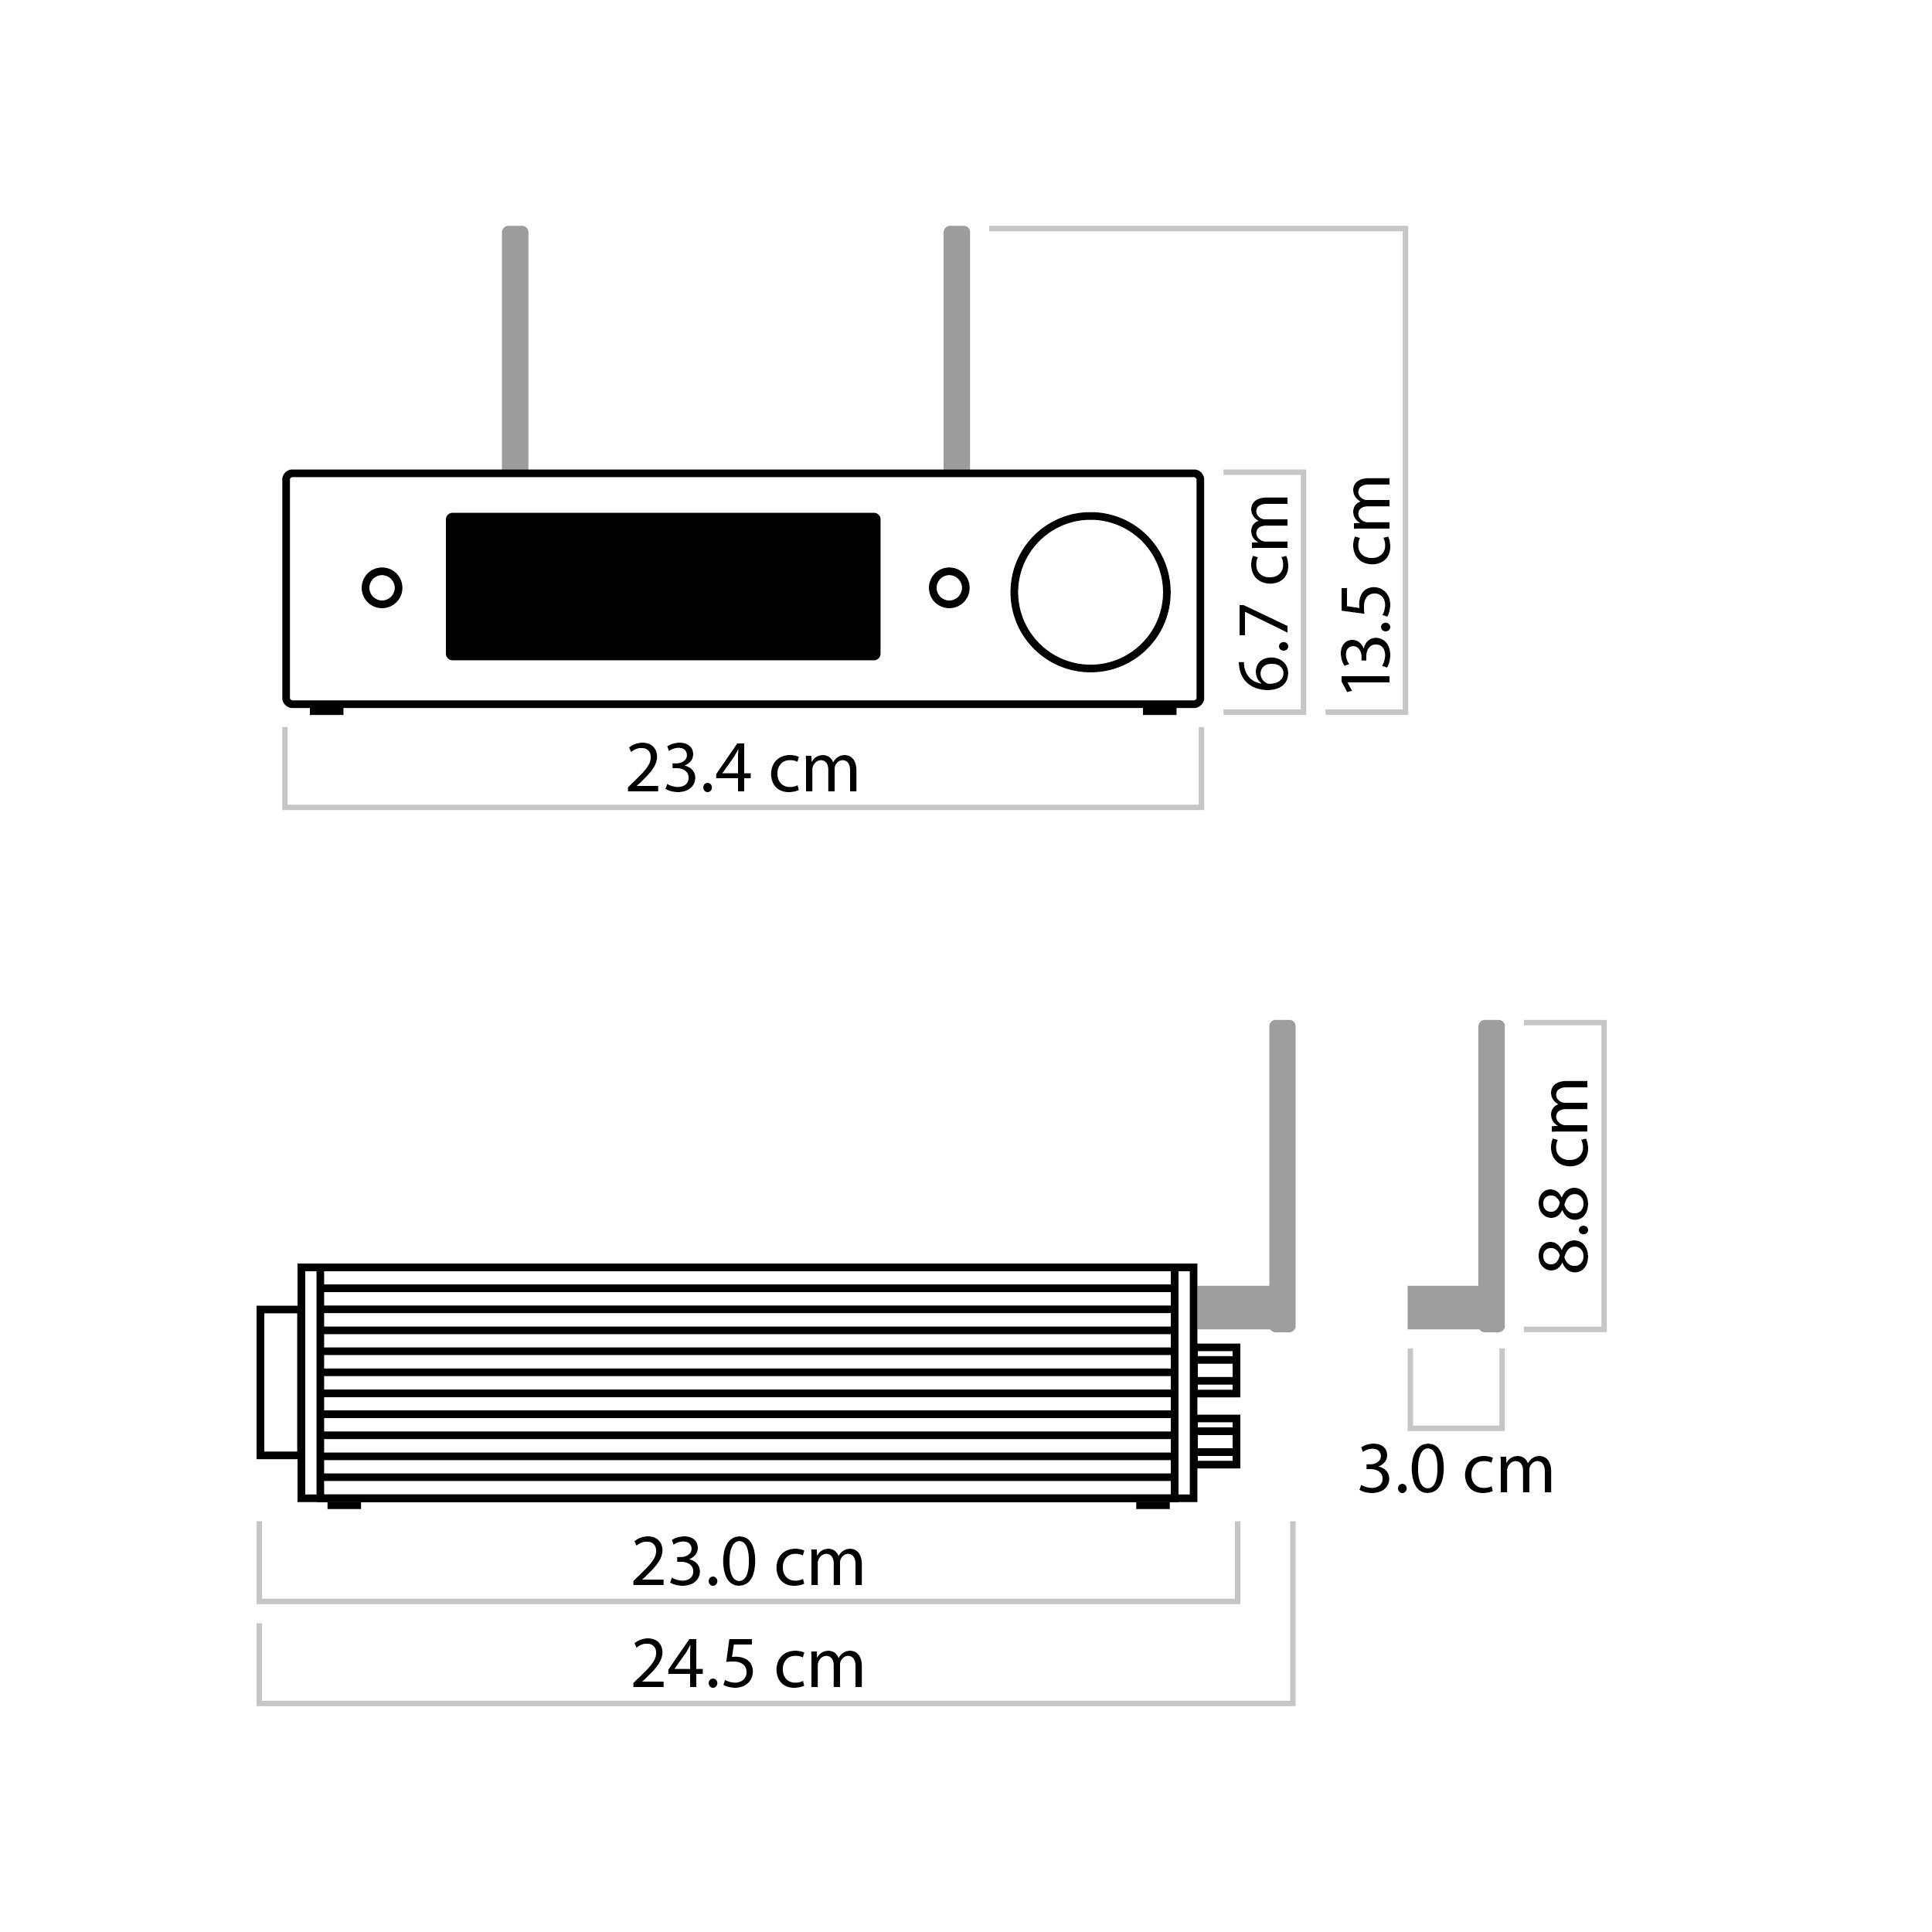 Nubert ampX Schwarz (Wide 2x Vollverstärker X-Room Calibration, Sound, Stereo W, 130 Vollverstärker) nuConnect